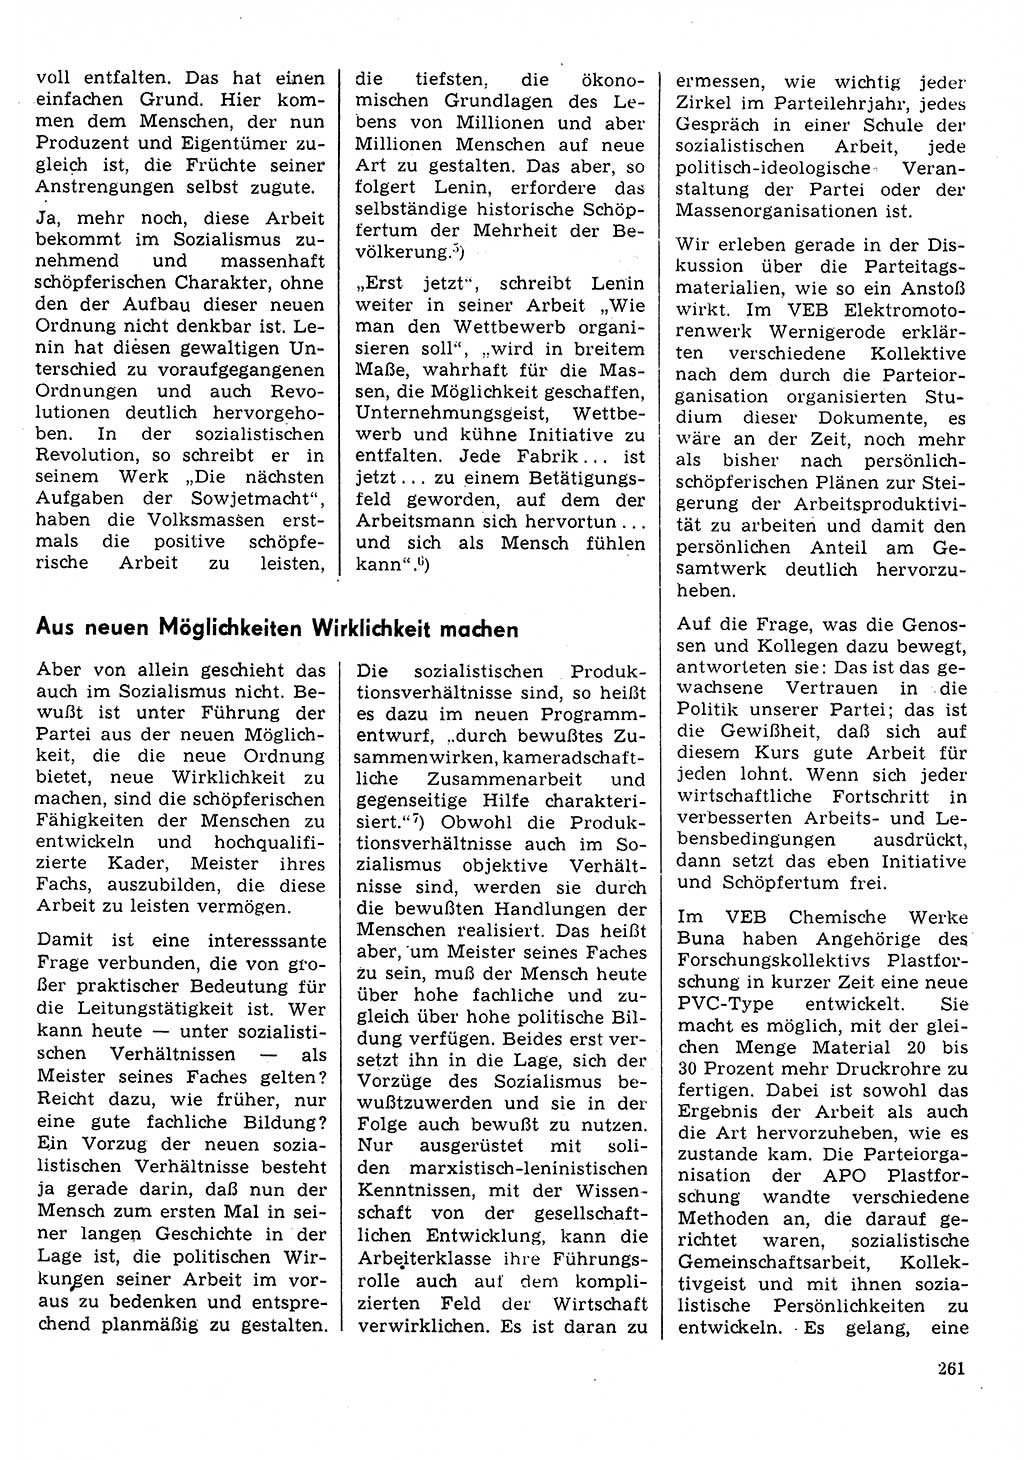 Neuer Weg (NW), Organ des Zentralkomitees (ZK) der SED (Sozialistische Einheitspartei Deutschlands) für Fragen des Parteilebens, 31. Jahrgang [Deutsche Demokratische Republik (DDR)] 1976, Seite 261 (NW ZK SED DDR 1976, S. 261)